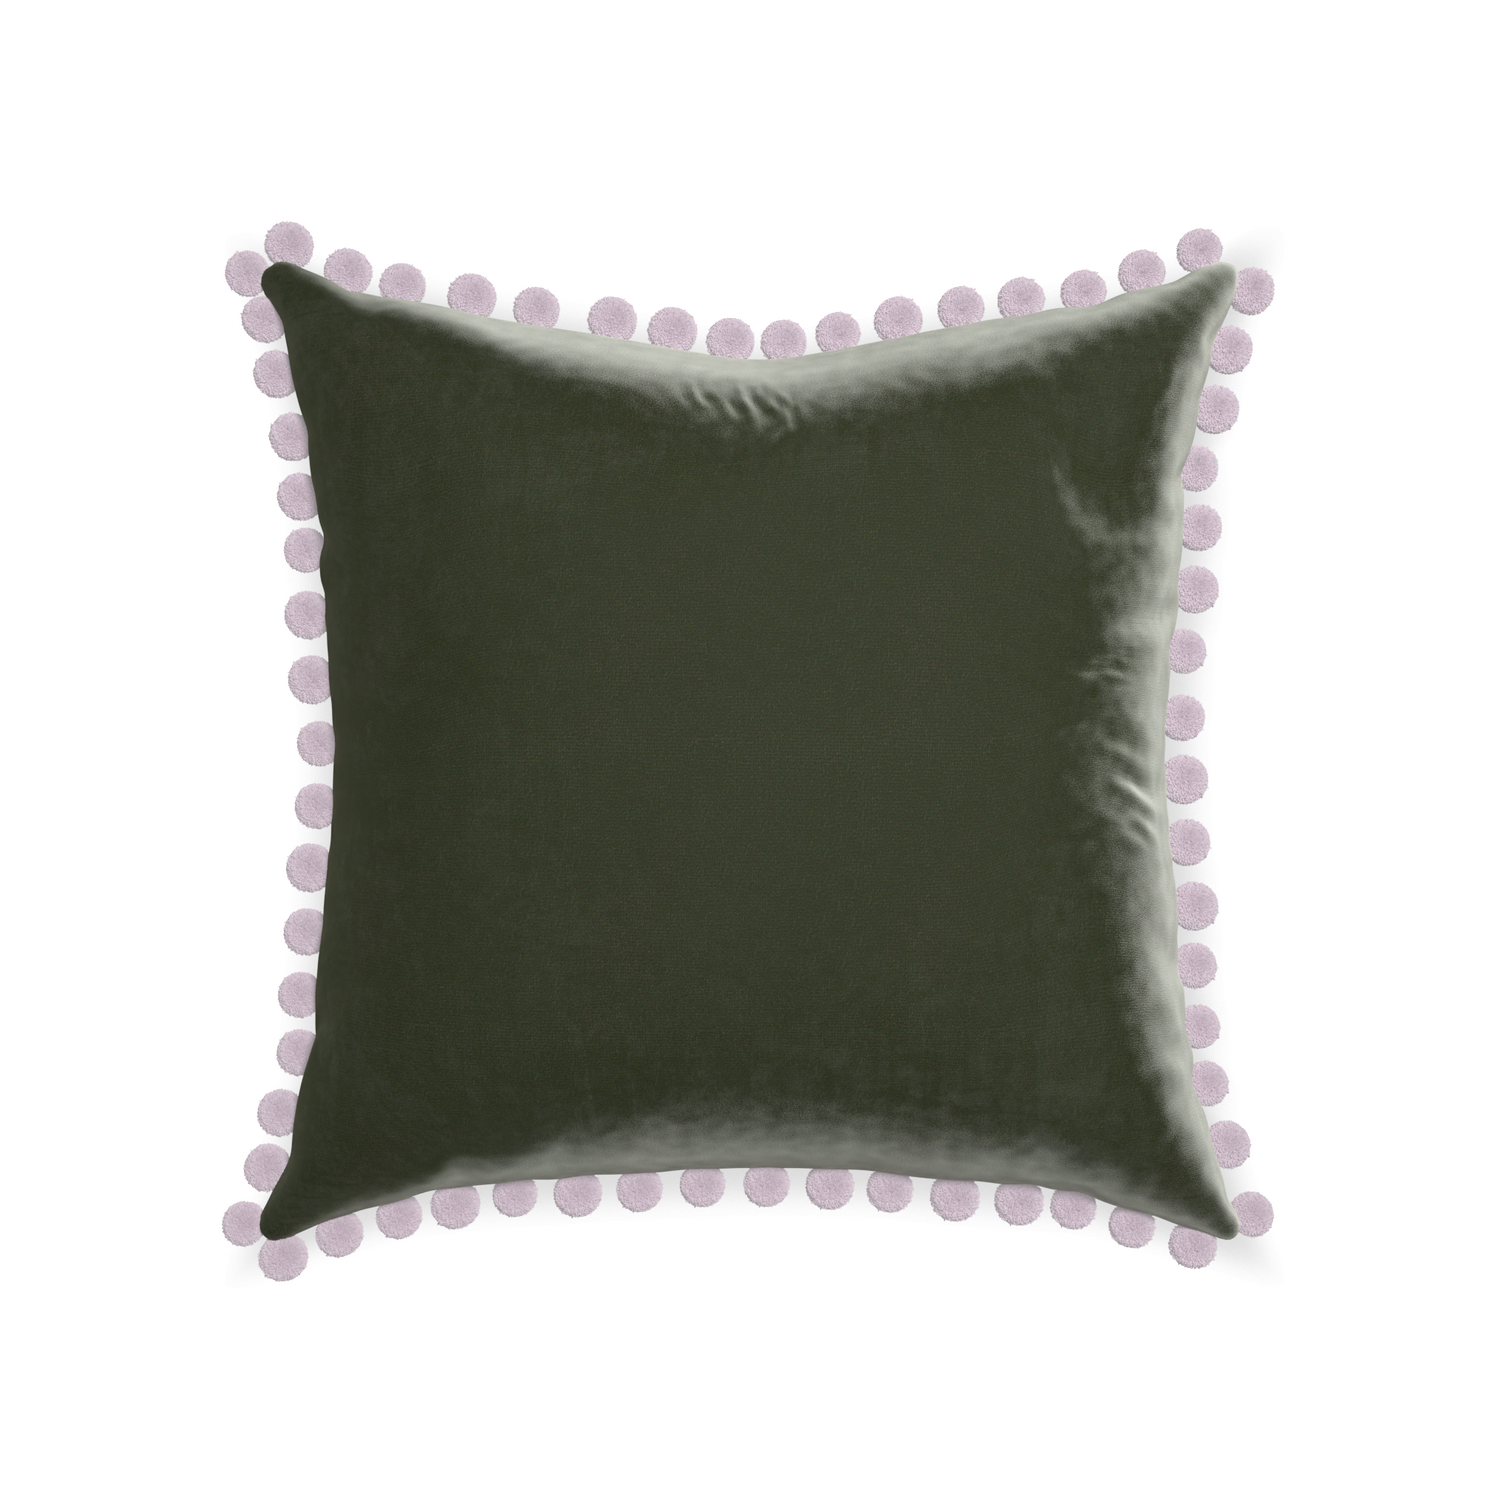 22-square fern velvet custom pillow with l on white background